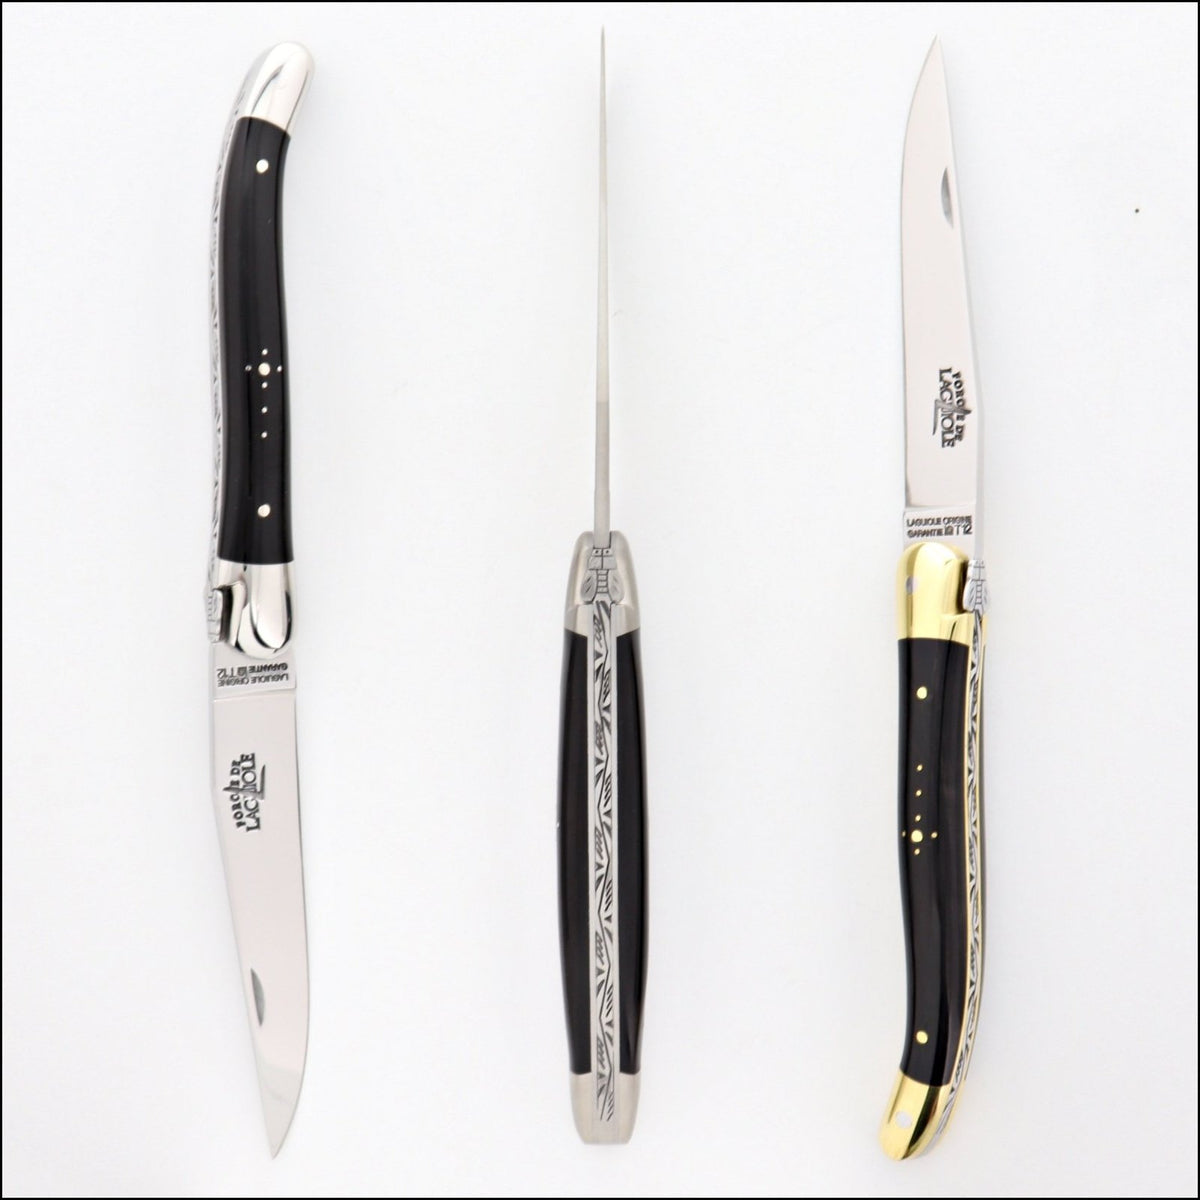 Forge de Laguiole Tradition 11 cm Black Horn Tip-POCKET KNIFE